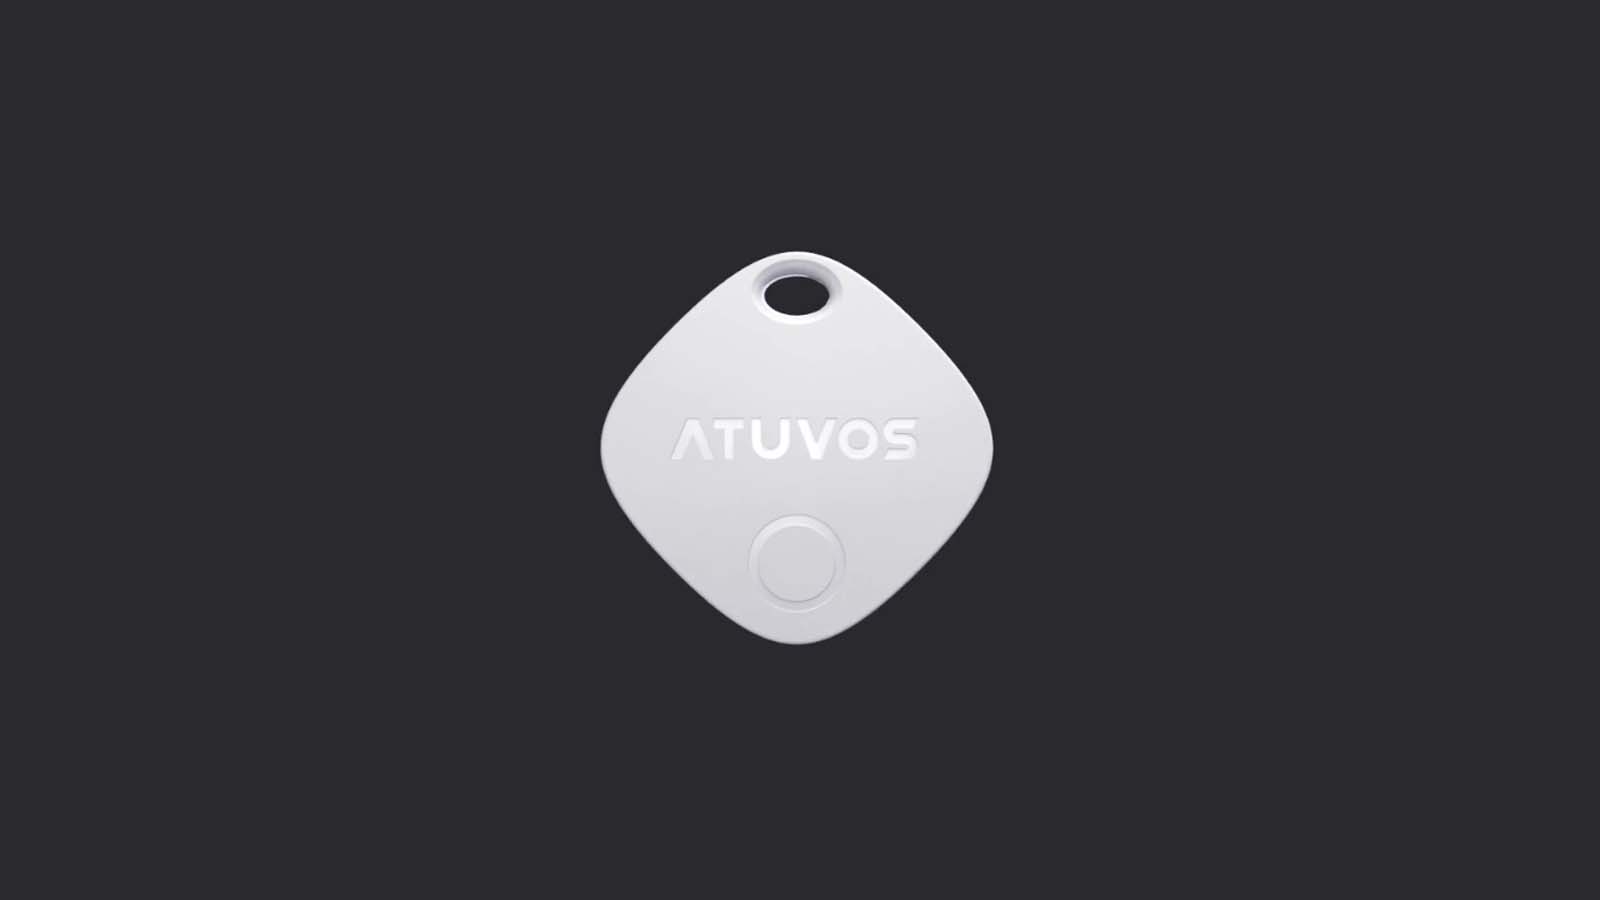 Navigare senza ansie: scopri il tracker Atuvos per oggetti smarriti